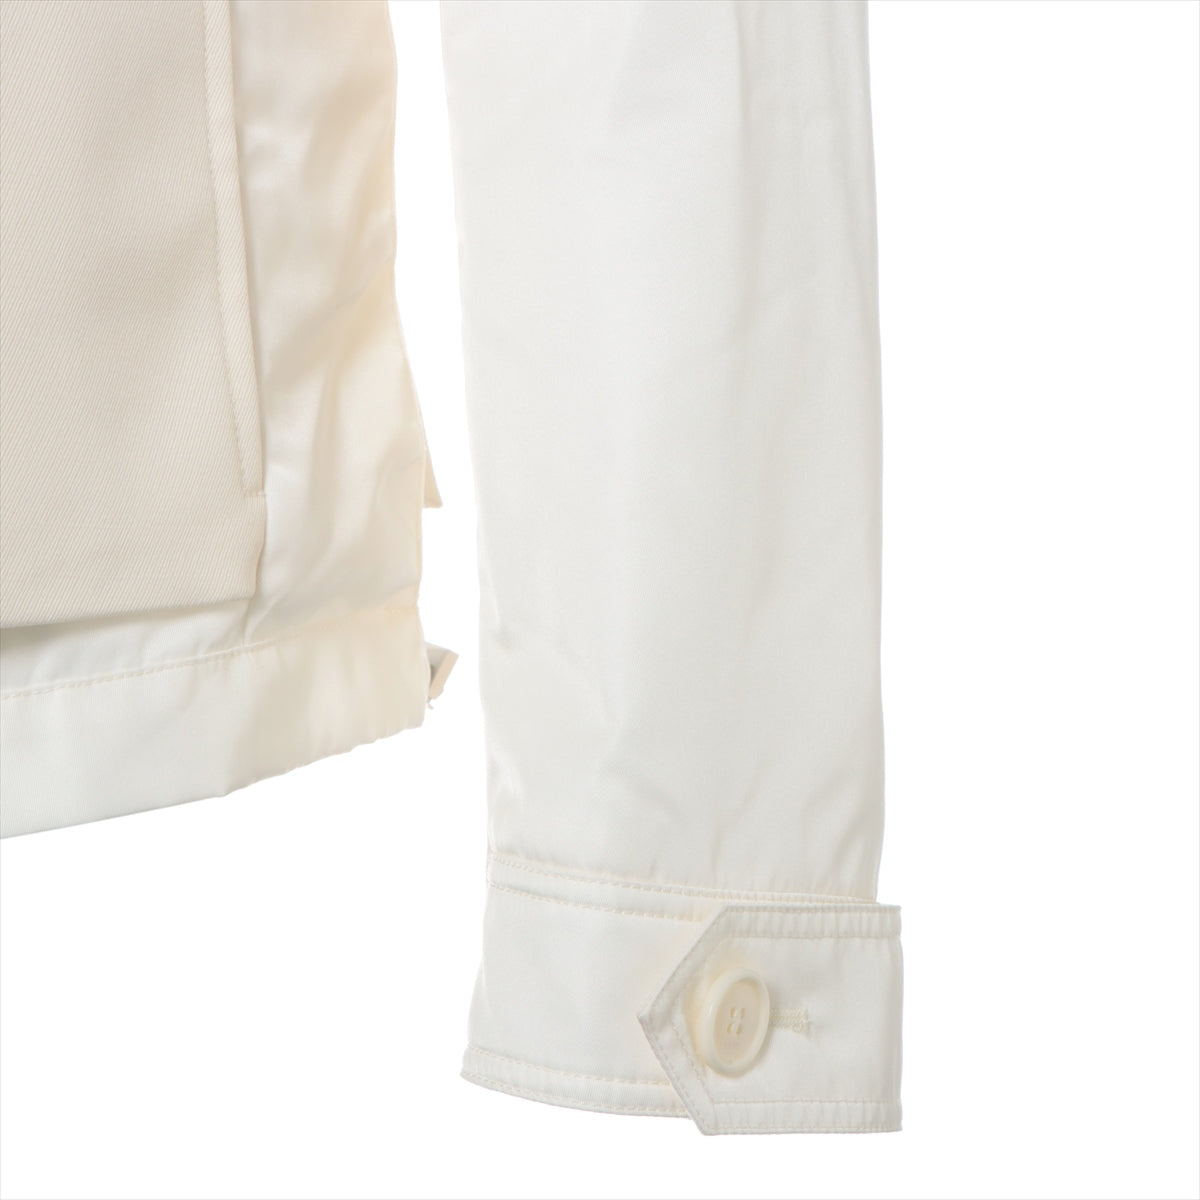 Dior x Sakai Wool & Nylon Jacket 46 Men's Ivory  213C430B5180